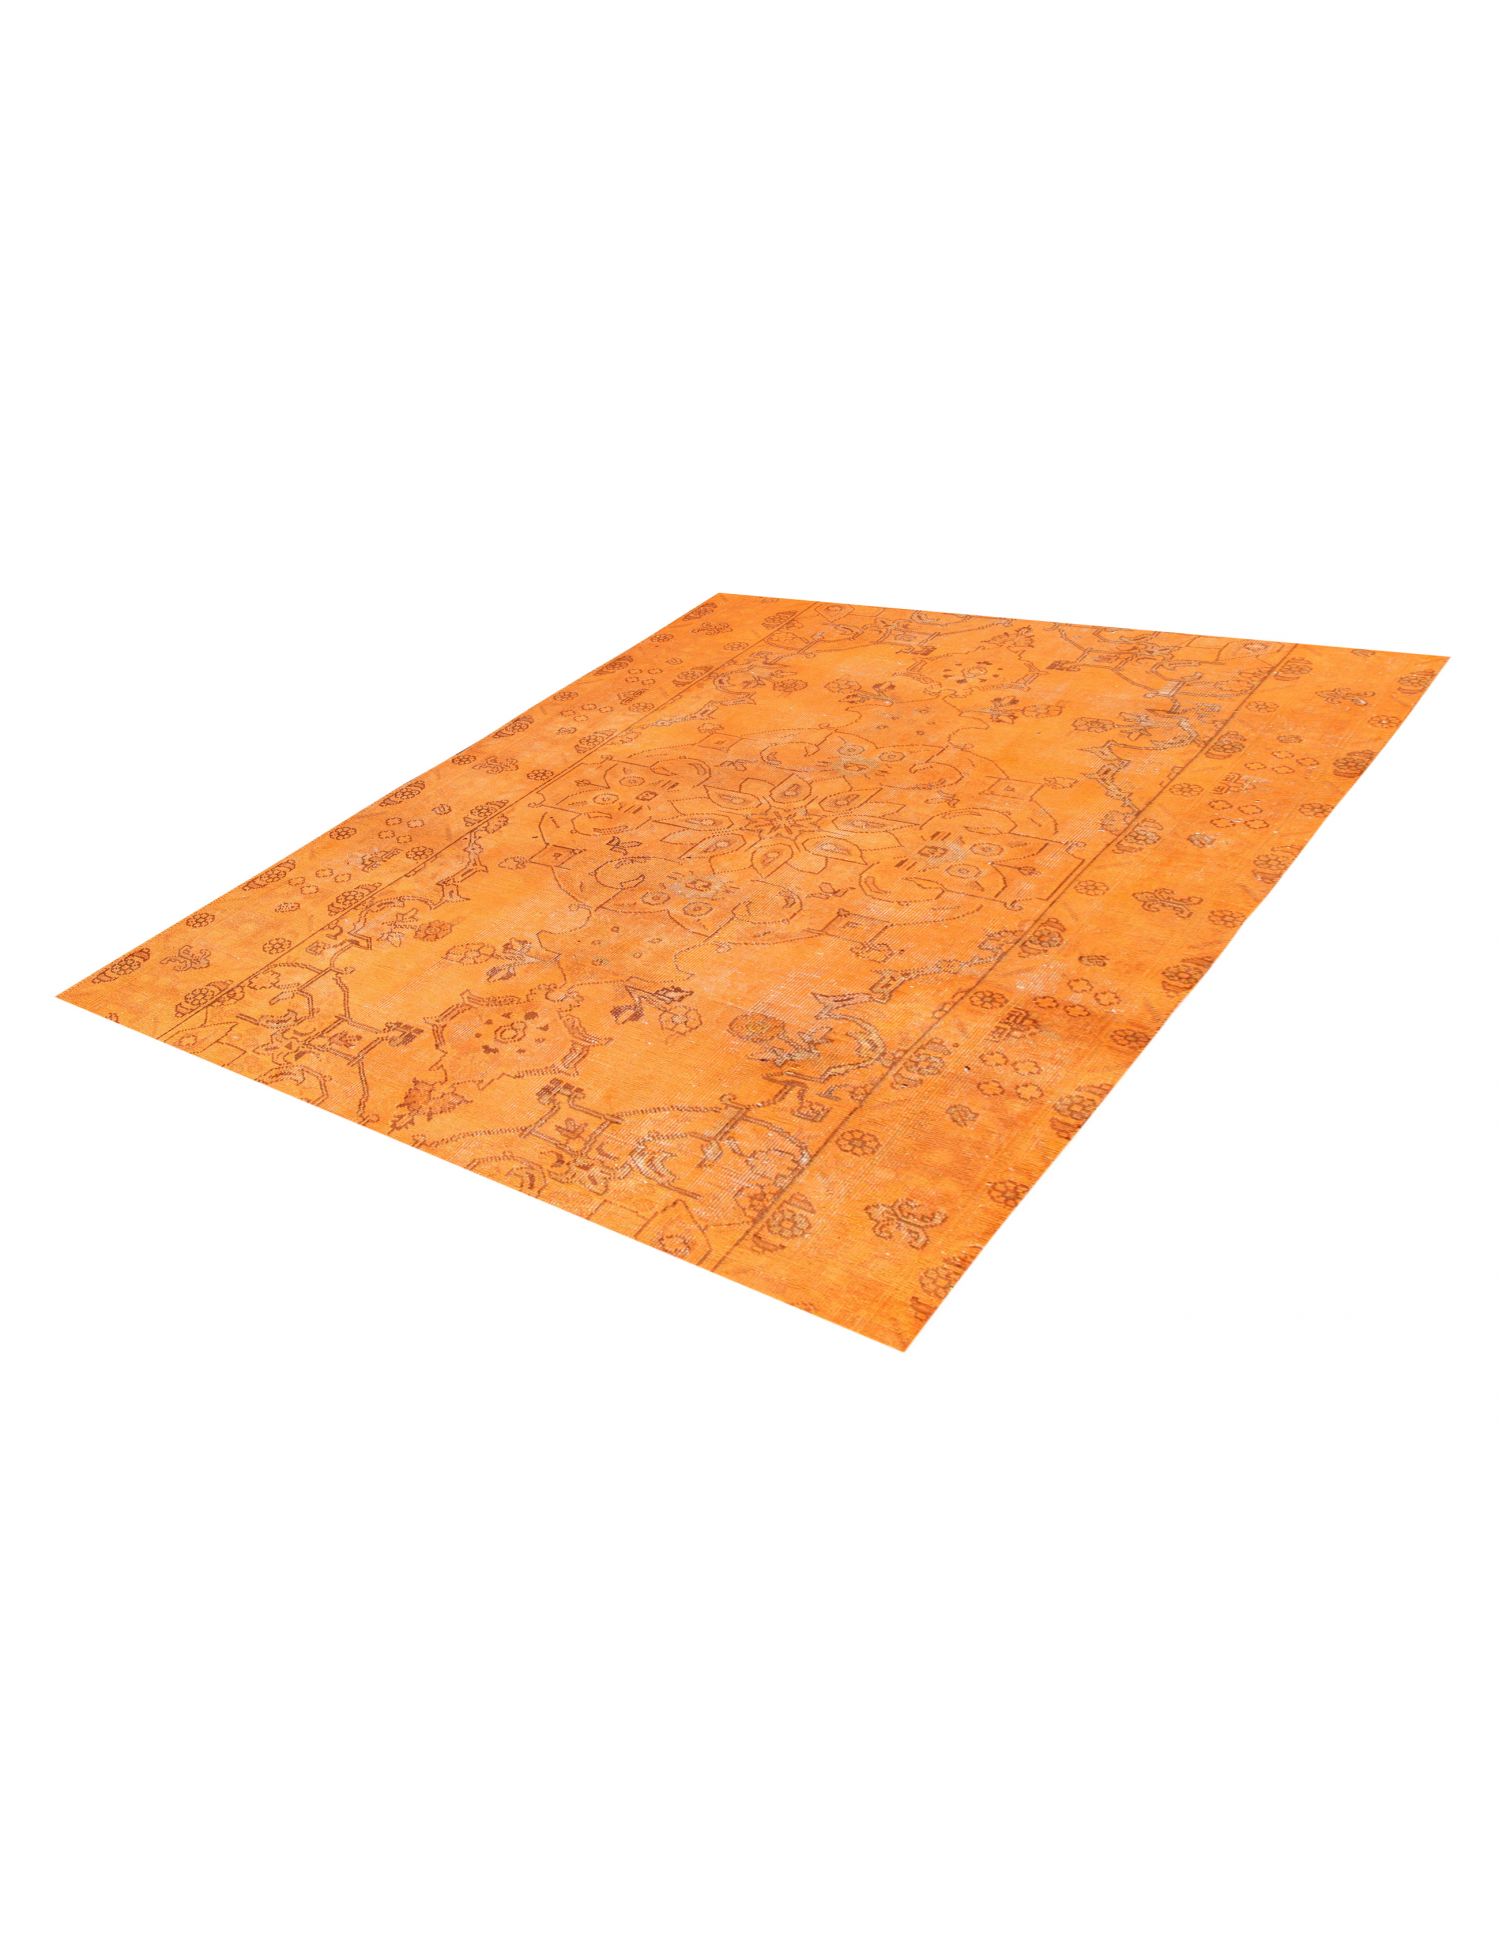 Persialaiset vintage matot  oranssi <br/>180 x 180 cm